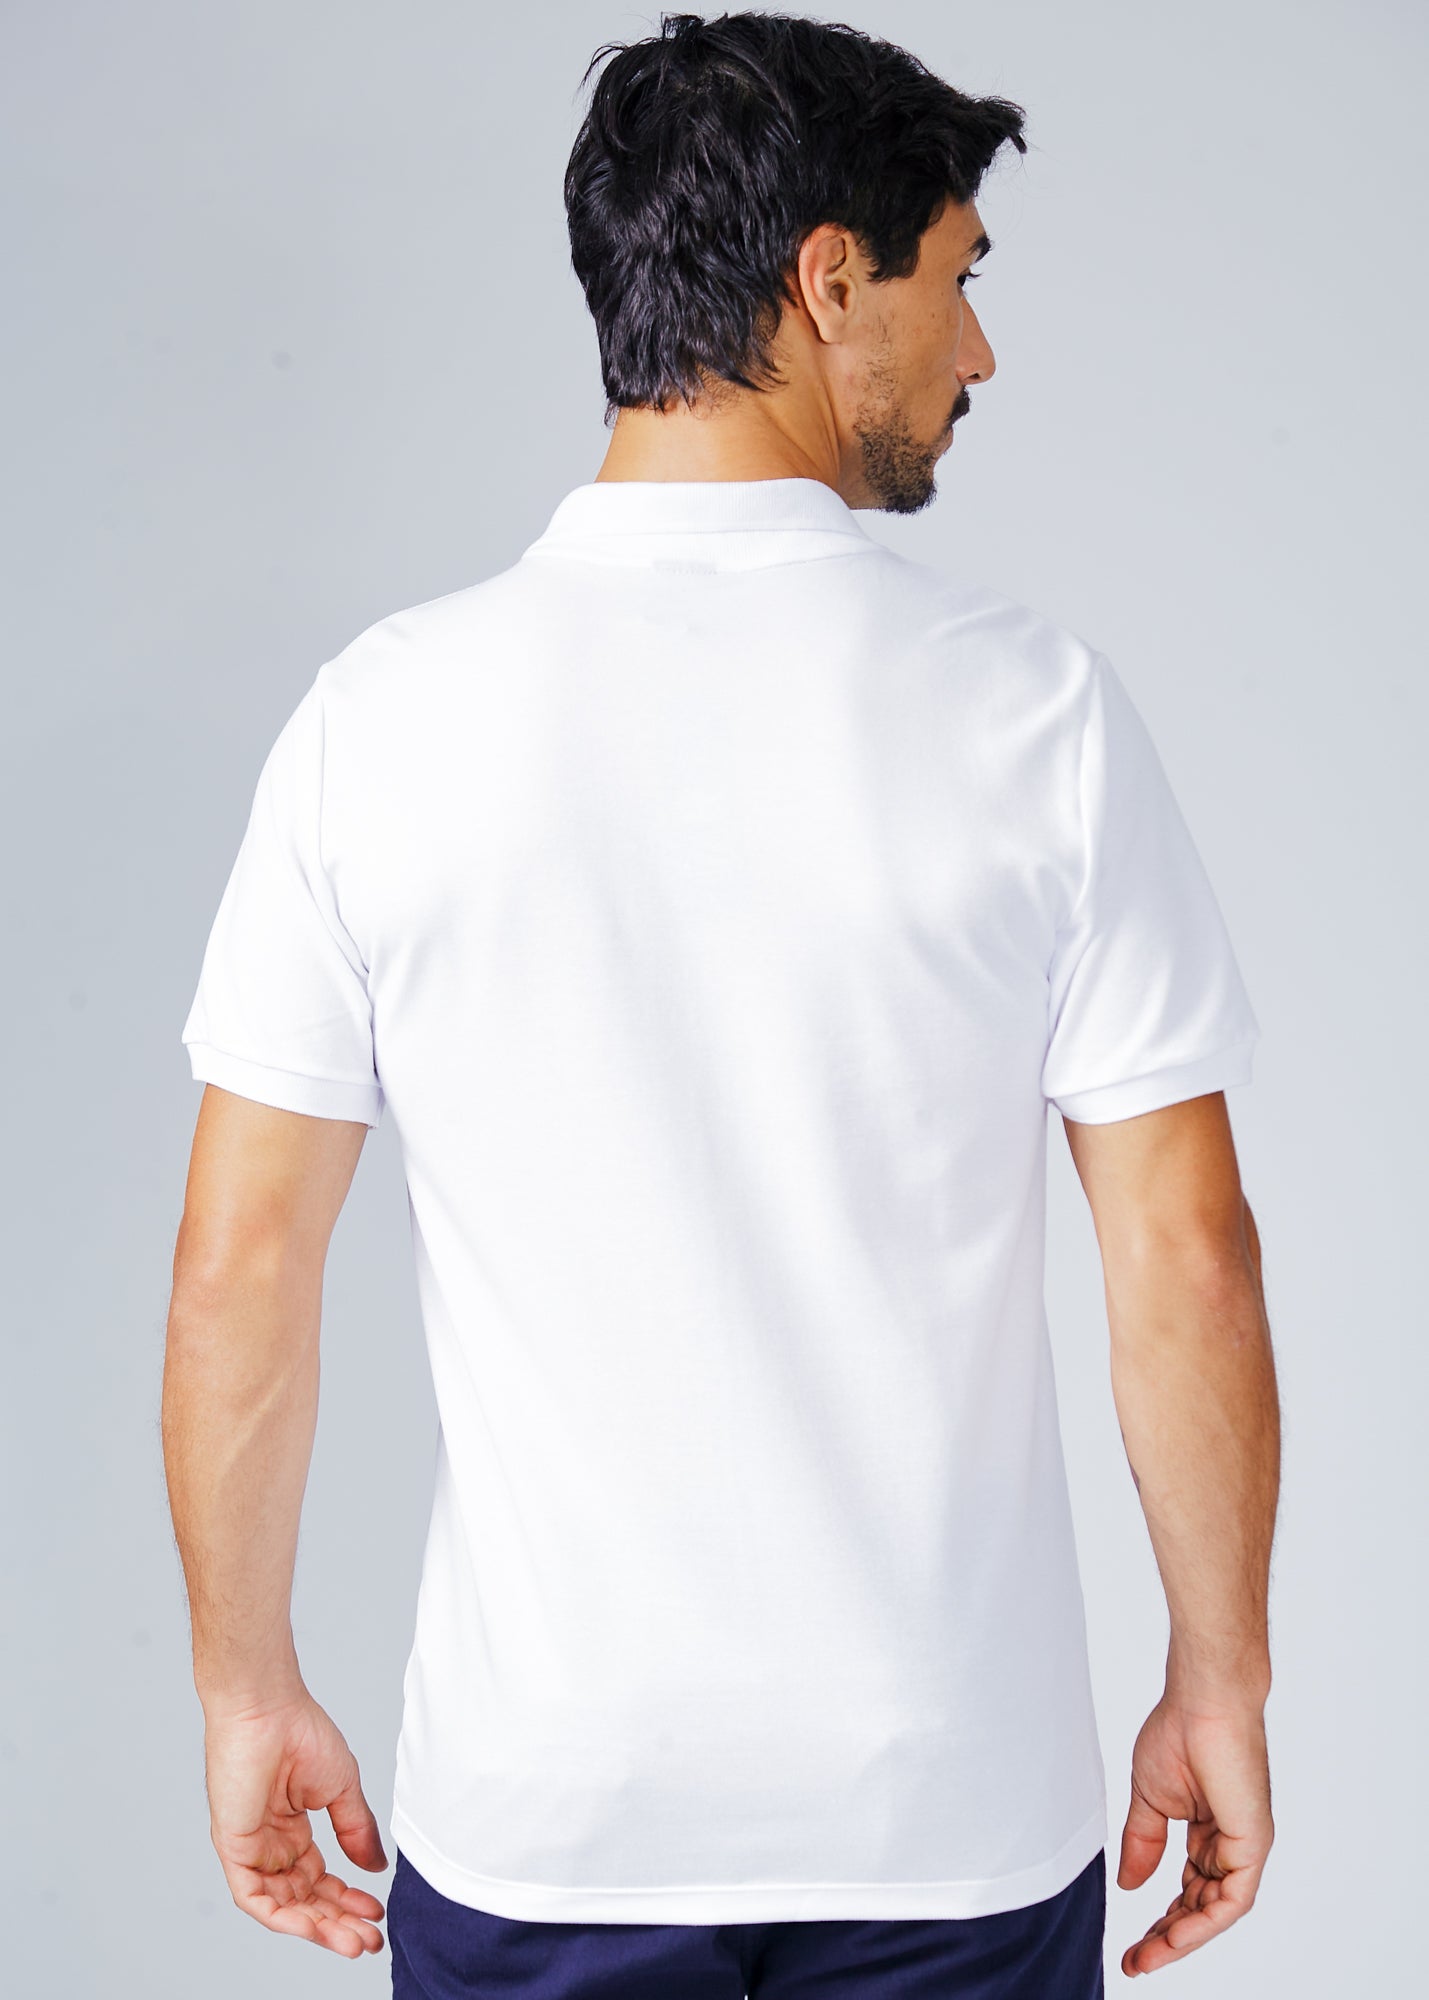 Camisa Polo Piquet - Branca